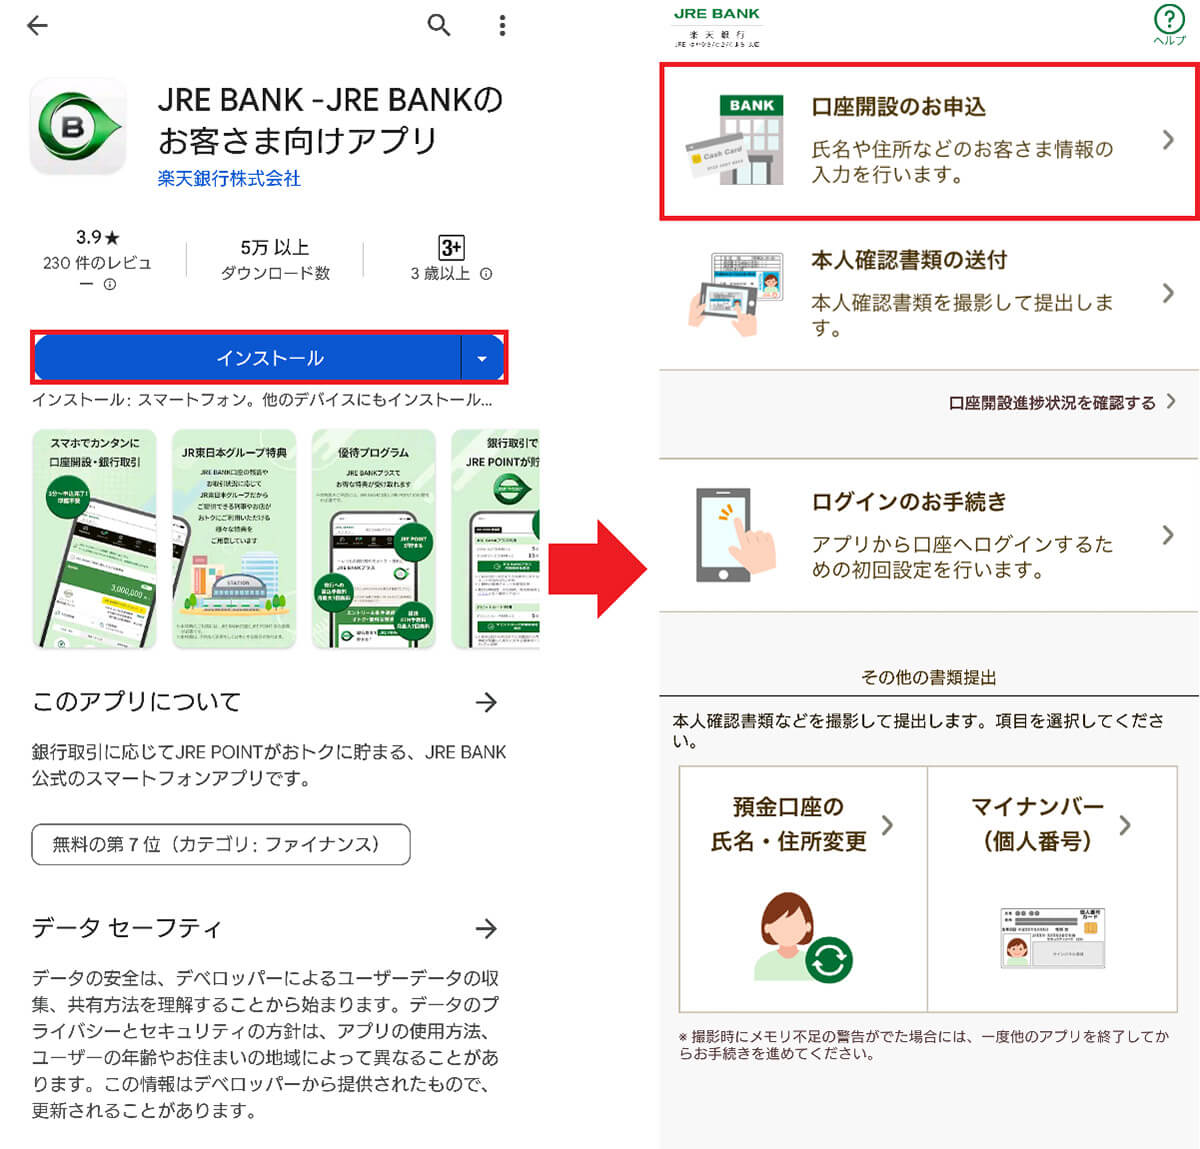 スマホアプリでJRE BANKの口座開設申込をする手順1